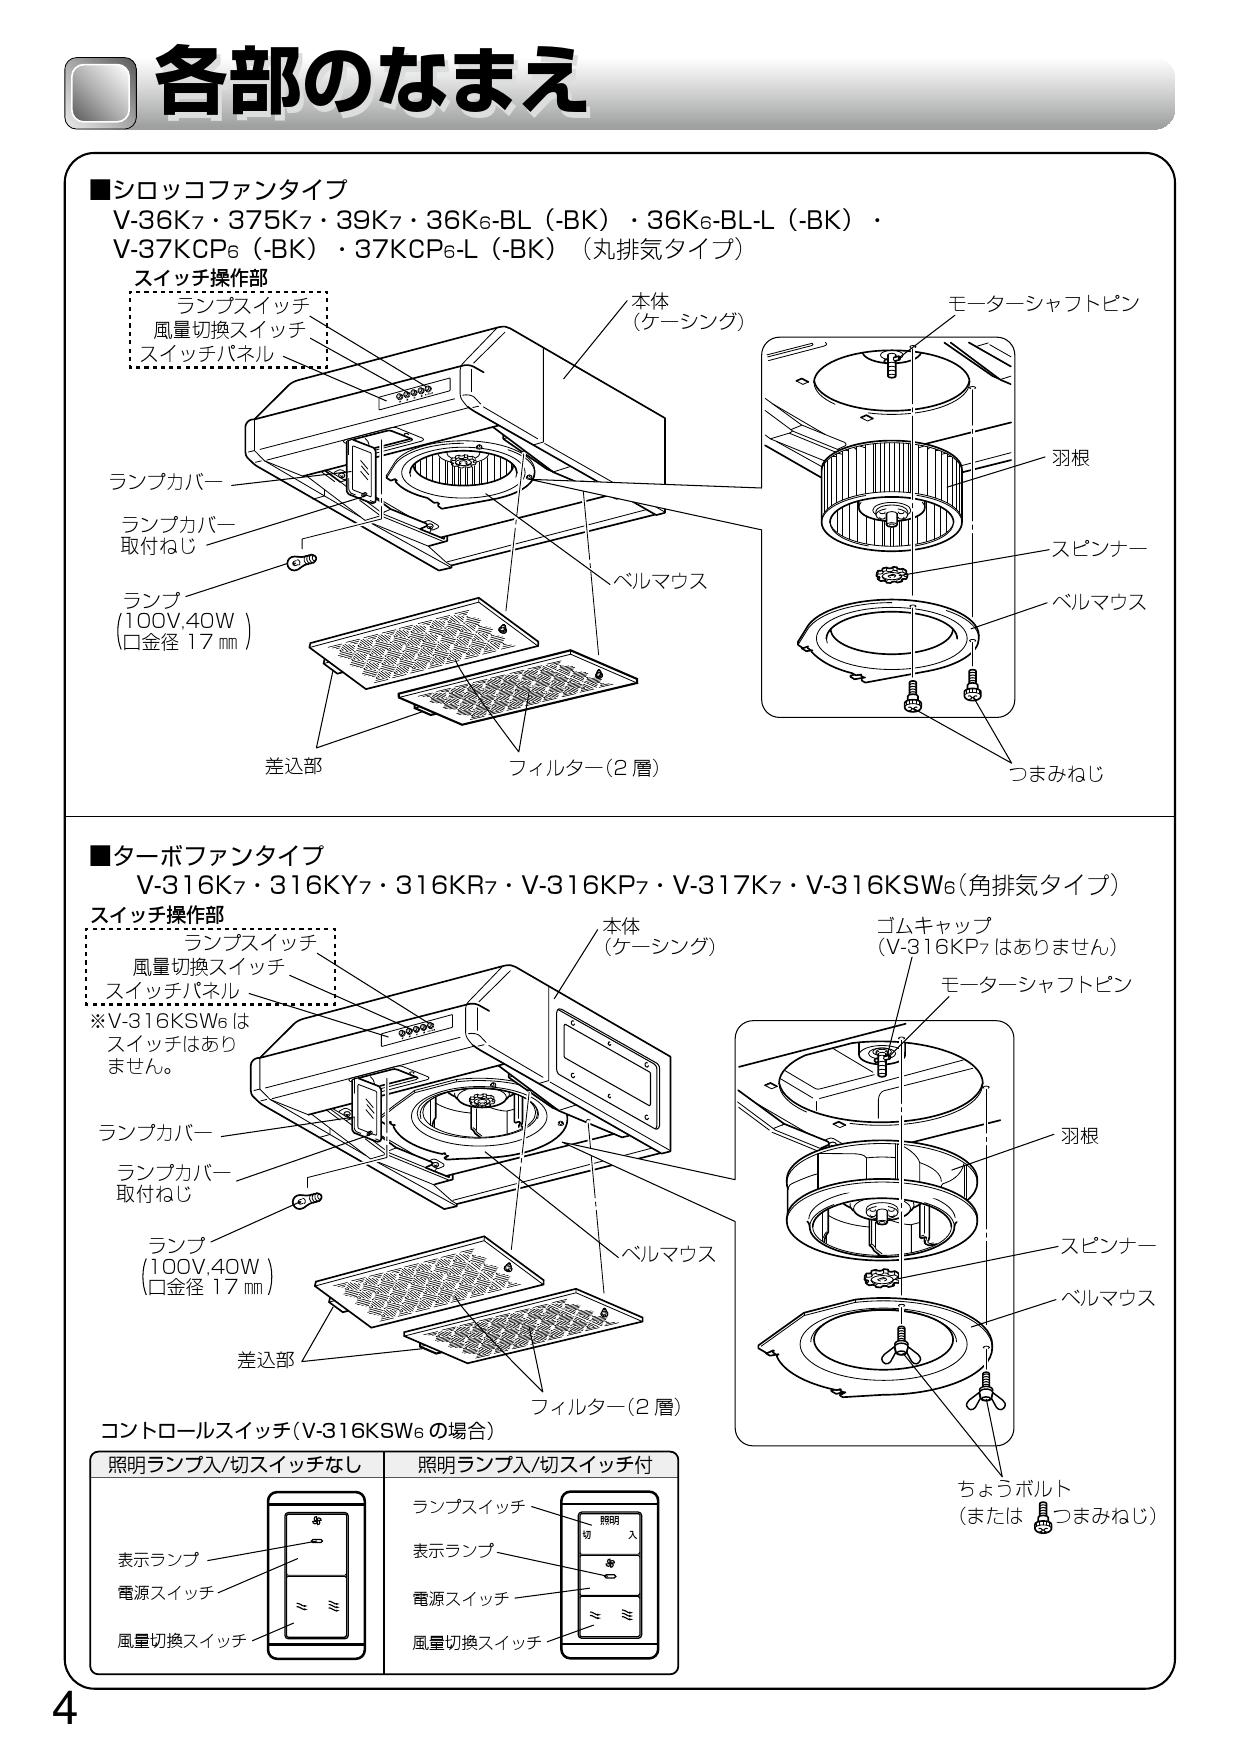 信託 三菱電機 MITSUBISHI ELECTRIC レンジフードファン 浅形 高静圧 丸排気タイプ V-37KCP6